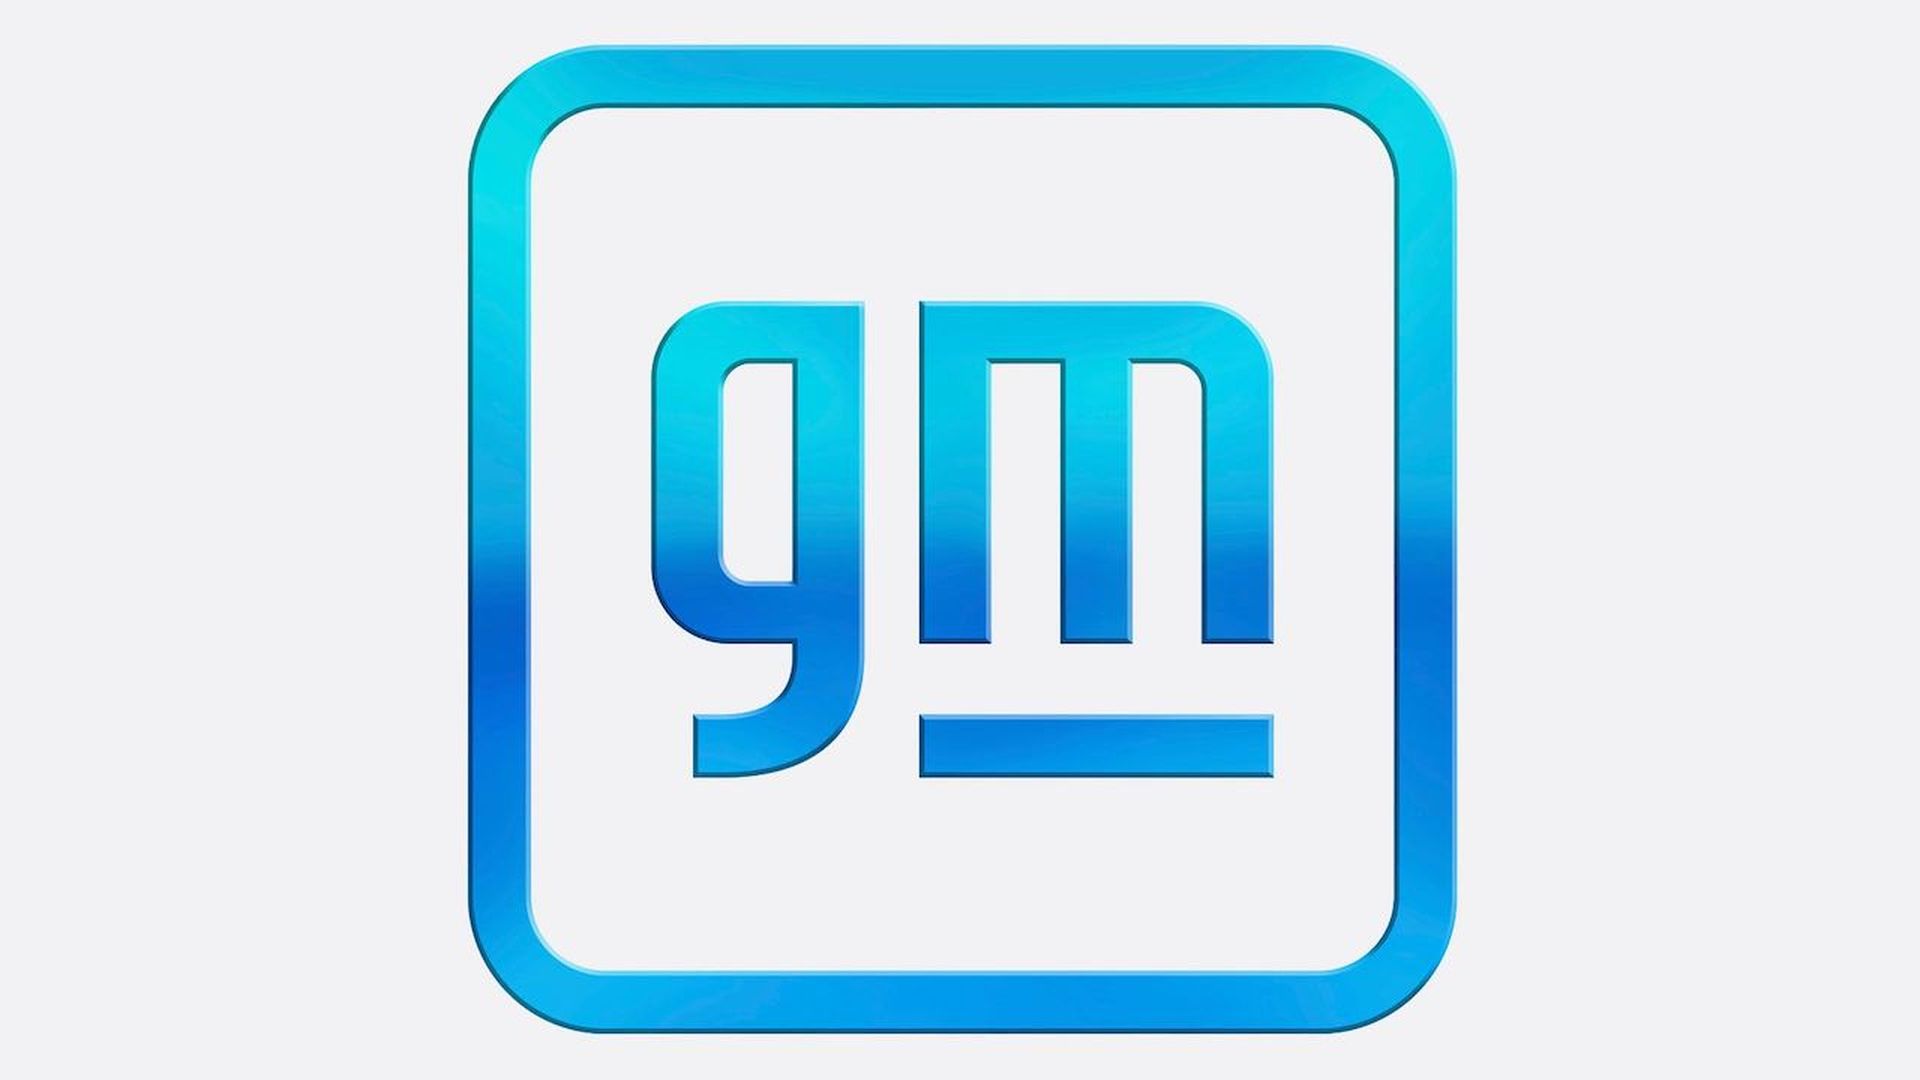 GM's new logo